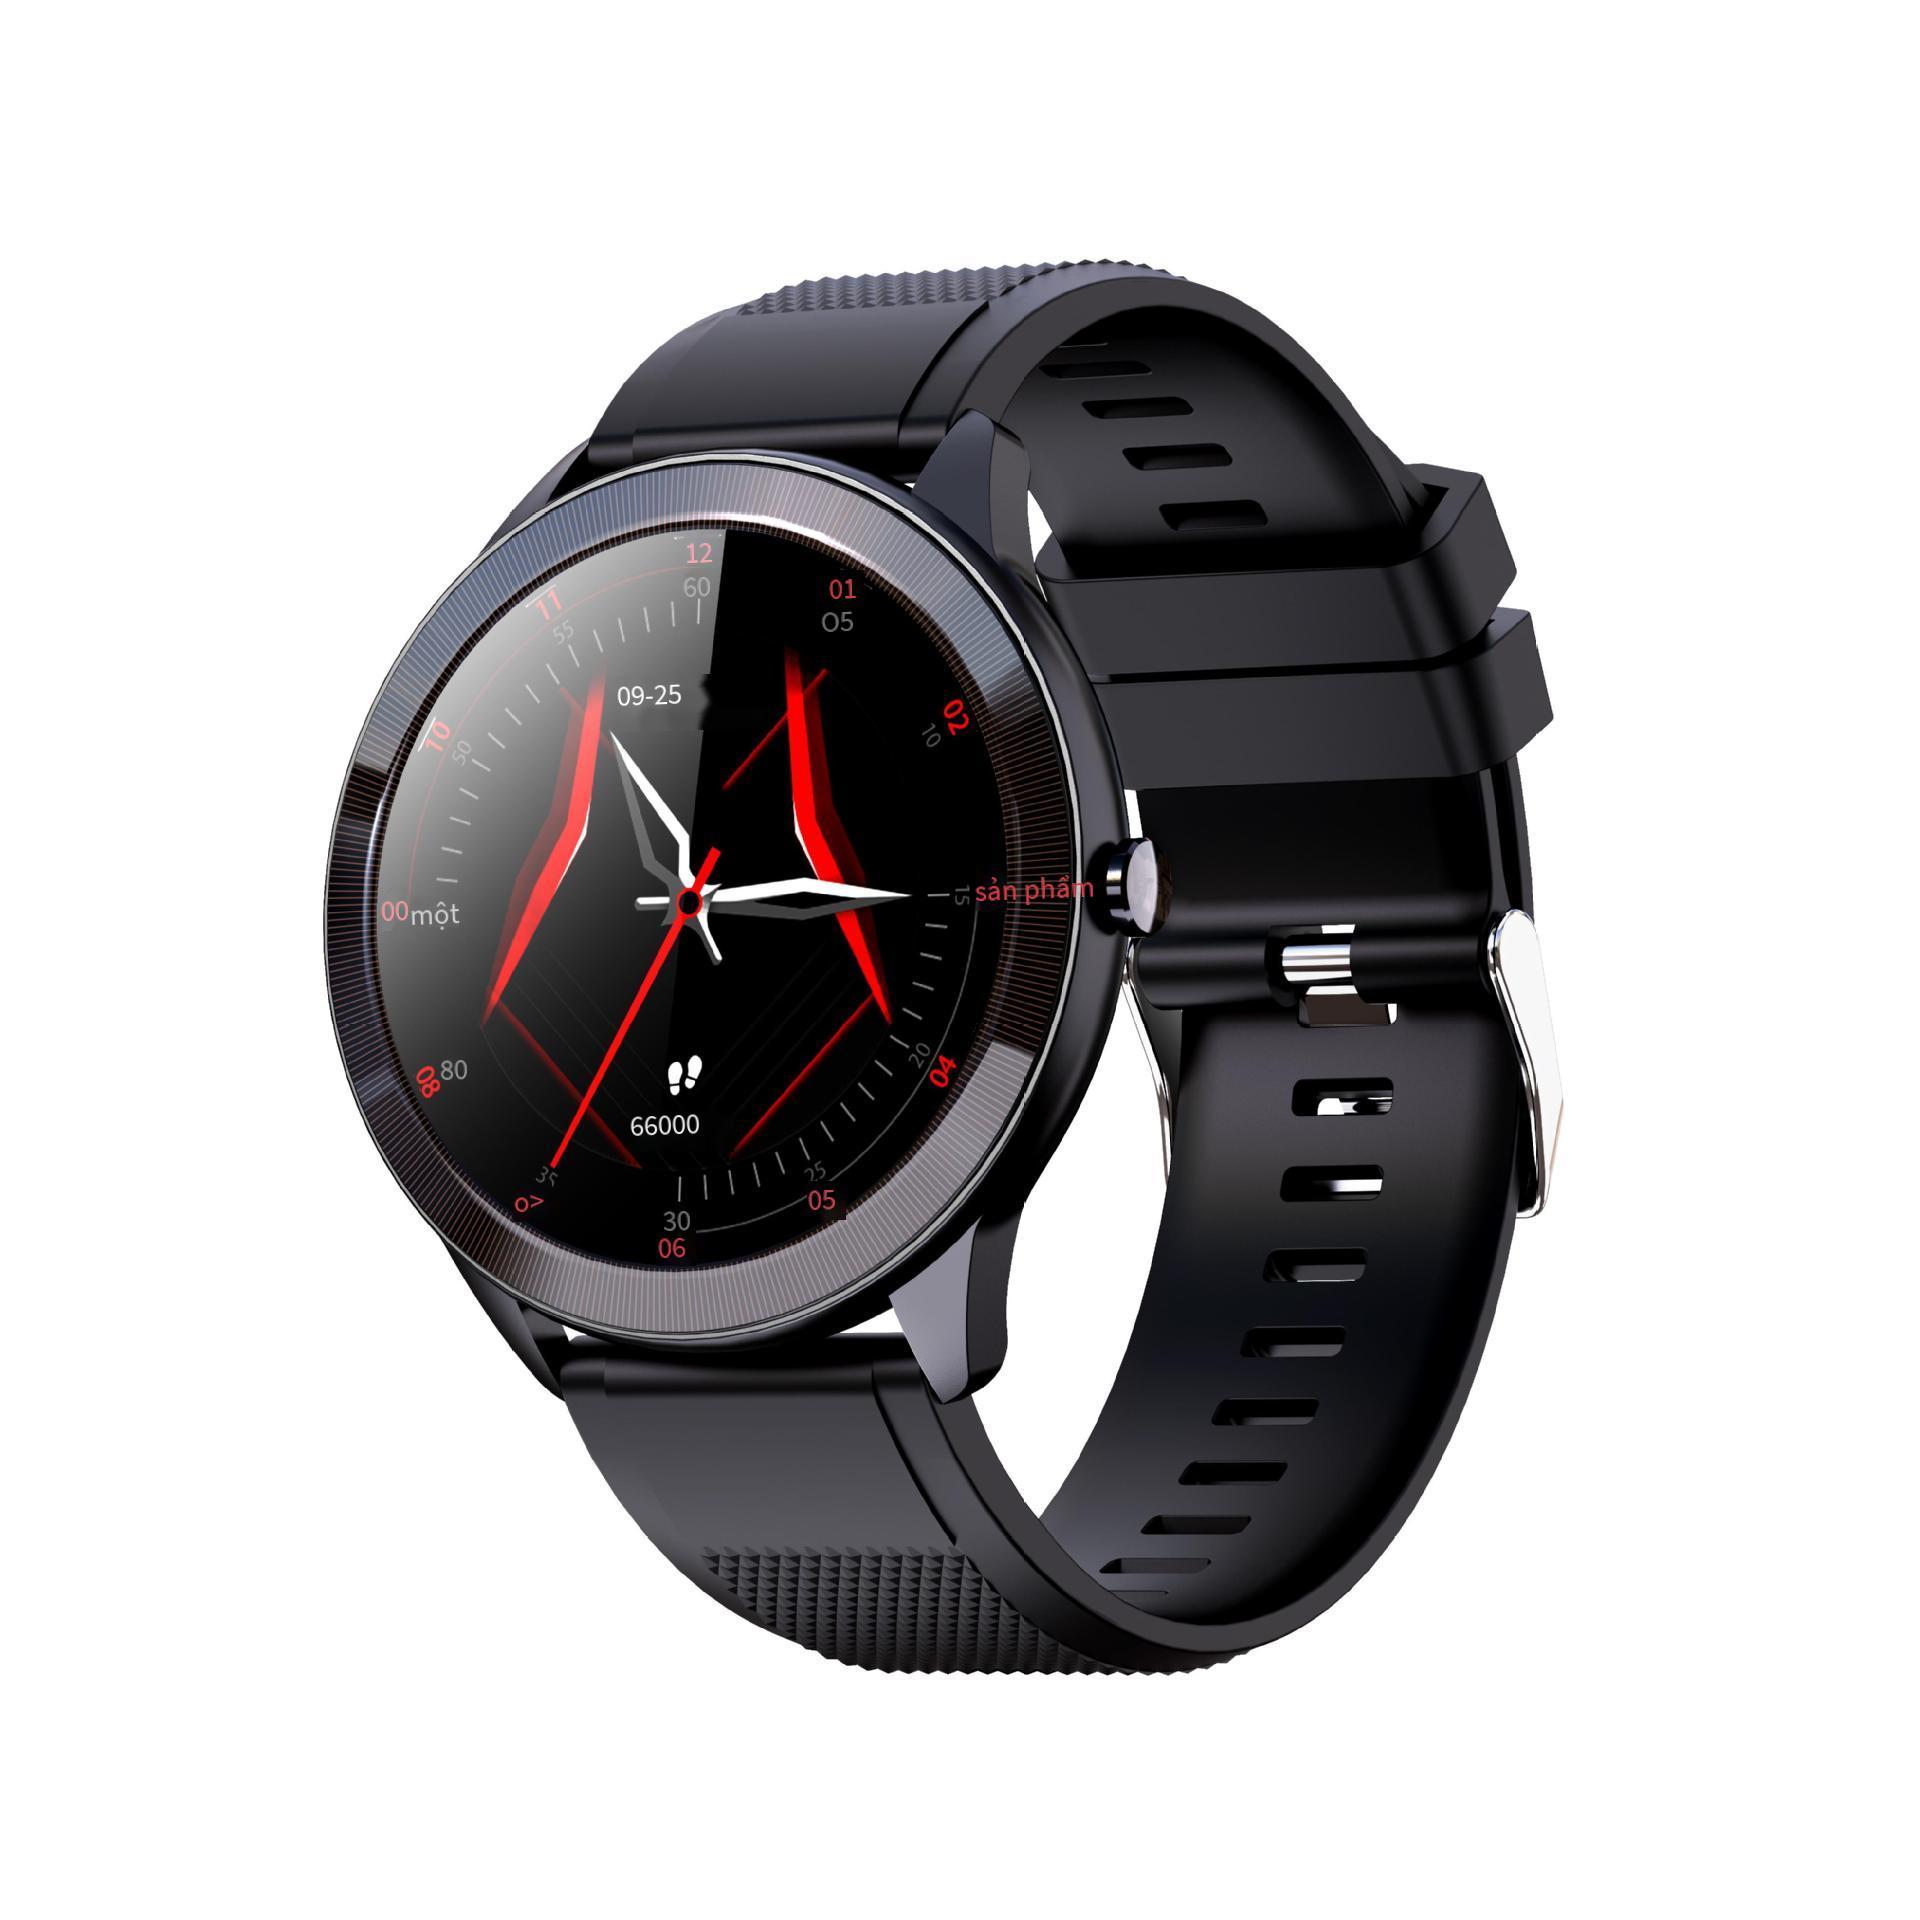 Giá tốt nhất Huaqiangbei mới đĩa đồng hồ thông minh màn hình cảm ứng đầy đủ vòng đeo tay theo dõi sức khỏe chống nước IPX68